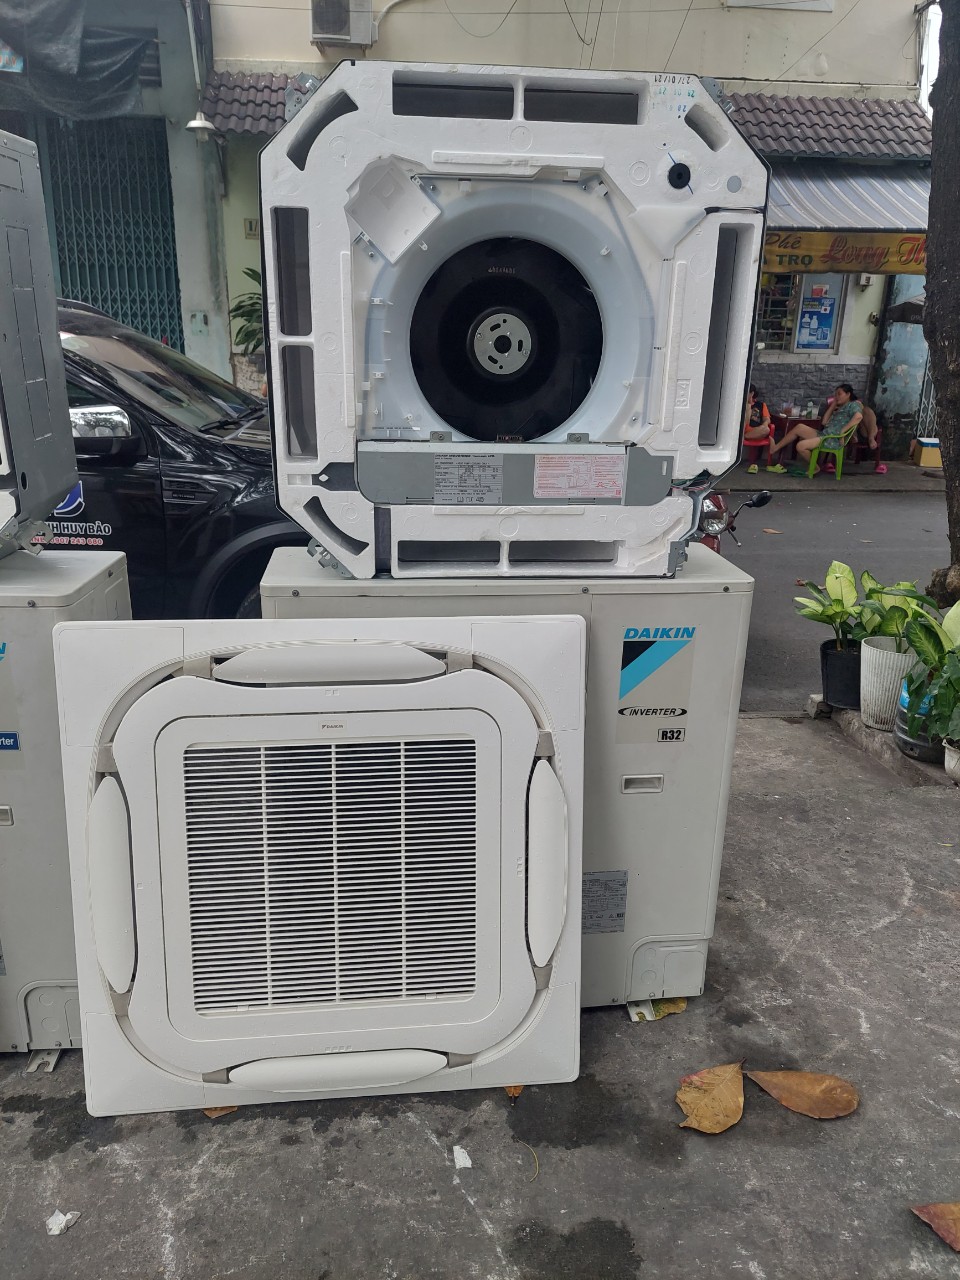 Bán máy lạnh cũ tại Bình Phước✔️ 0907 243 680 Mr.Bảo | Chuyên bán máy lạnh cũ sẵn sàng phục vụ và cung cấp các dòng máy lạnh/máy điều hòa Nhật Bản cũ chất lượng nhất với giá cả phù hợp nhất cho bà con, gia đình ở Tp.HCM